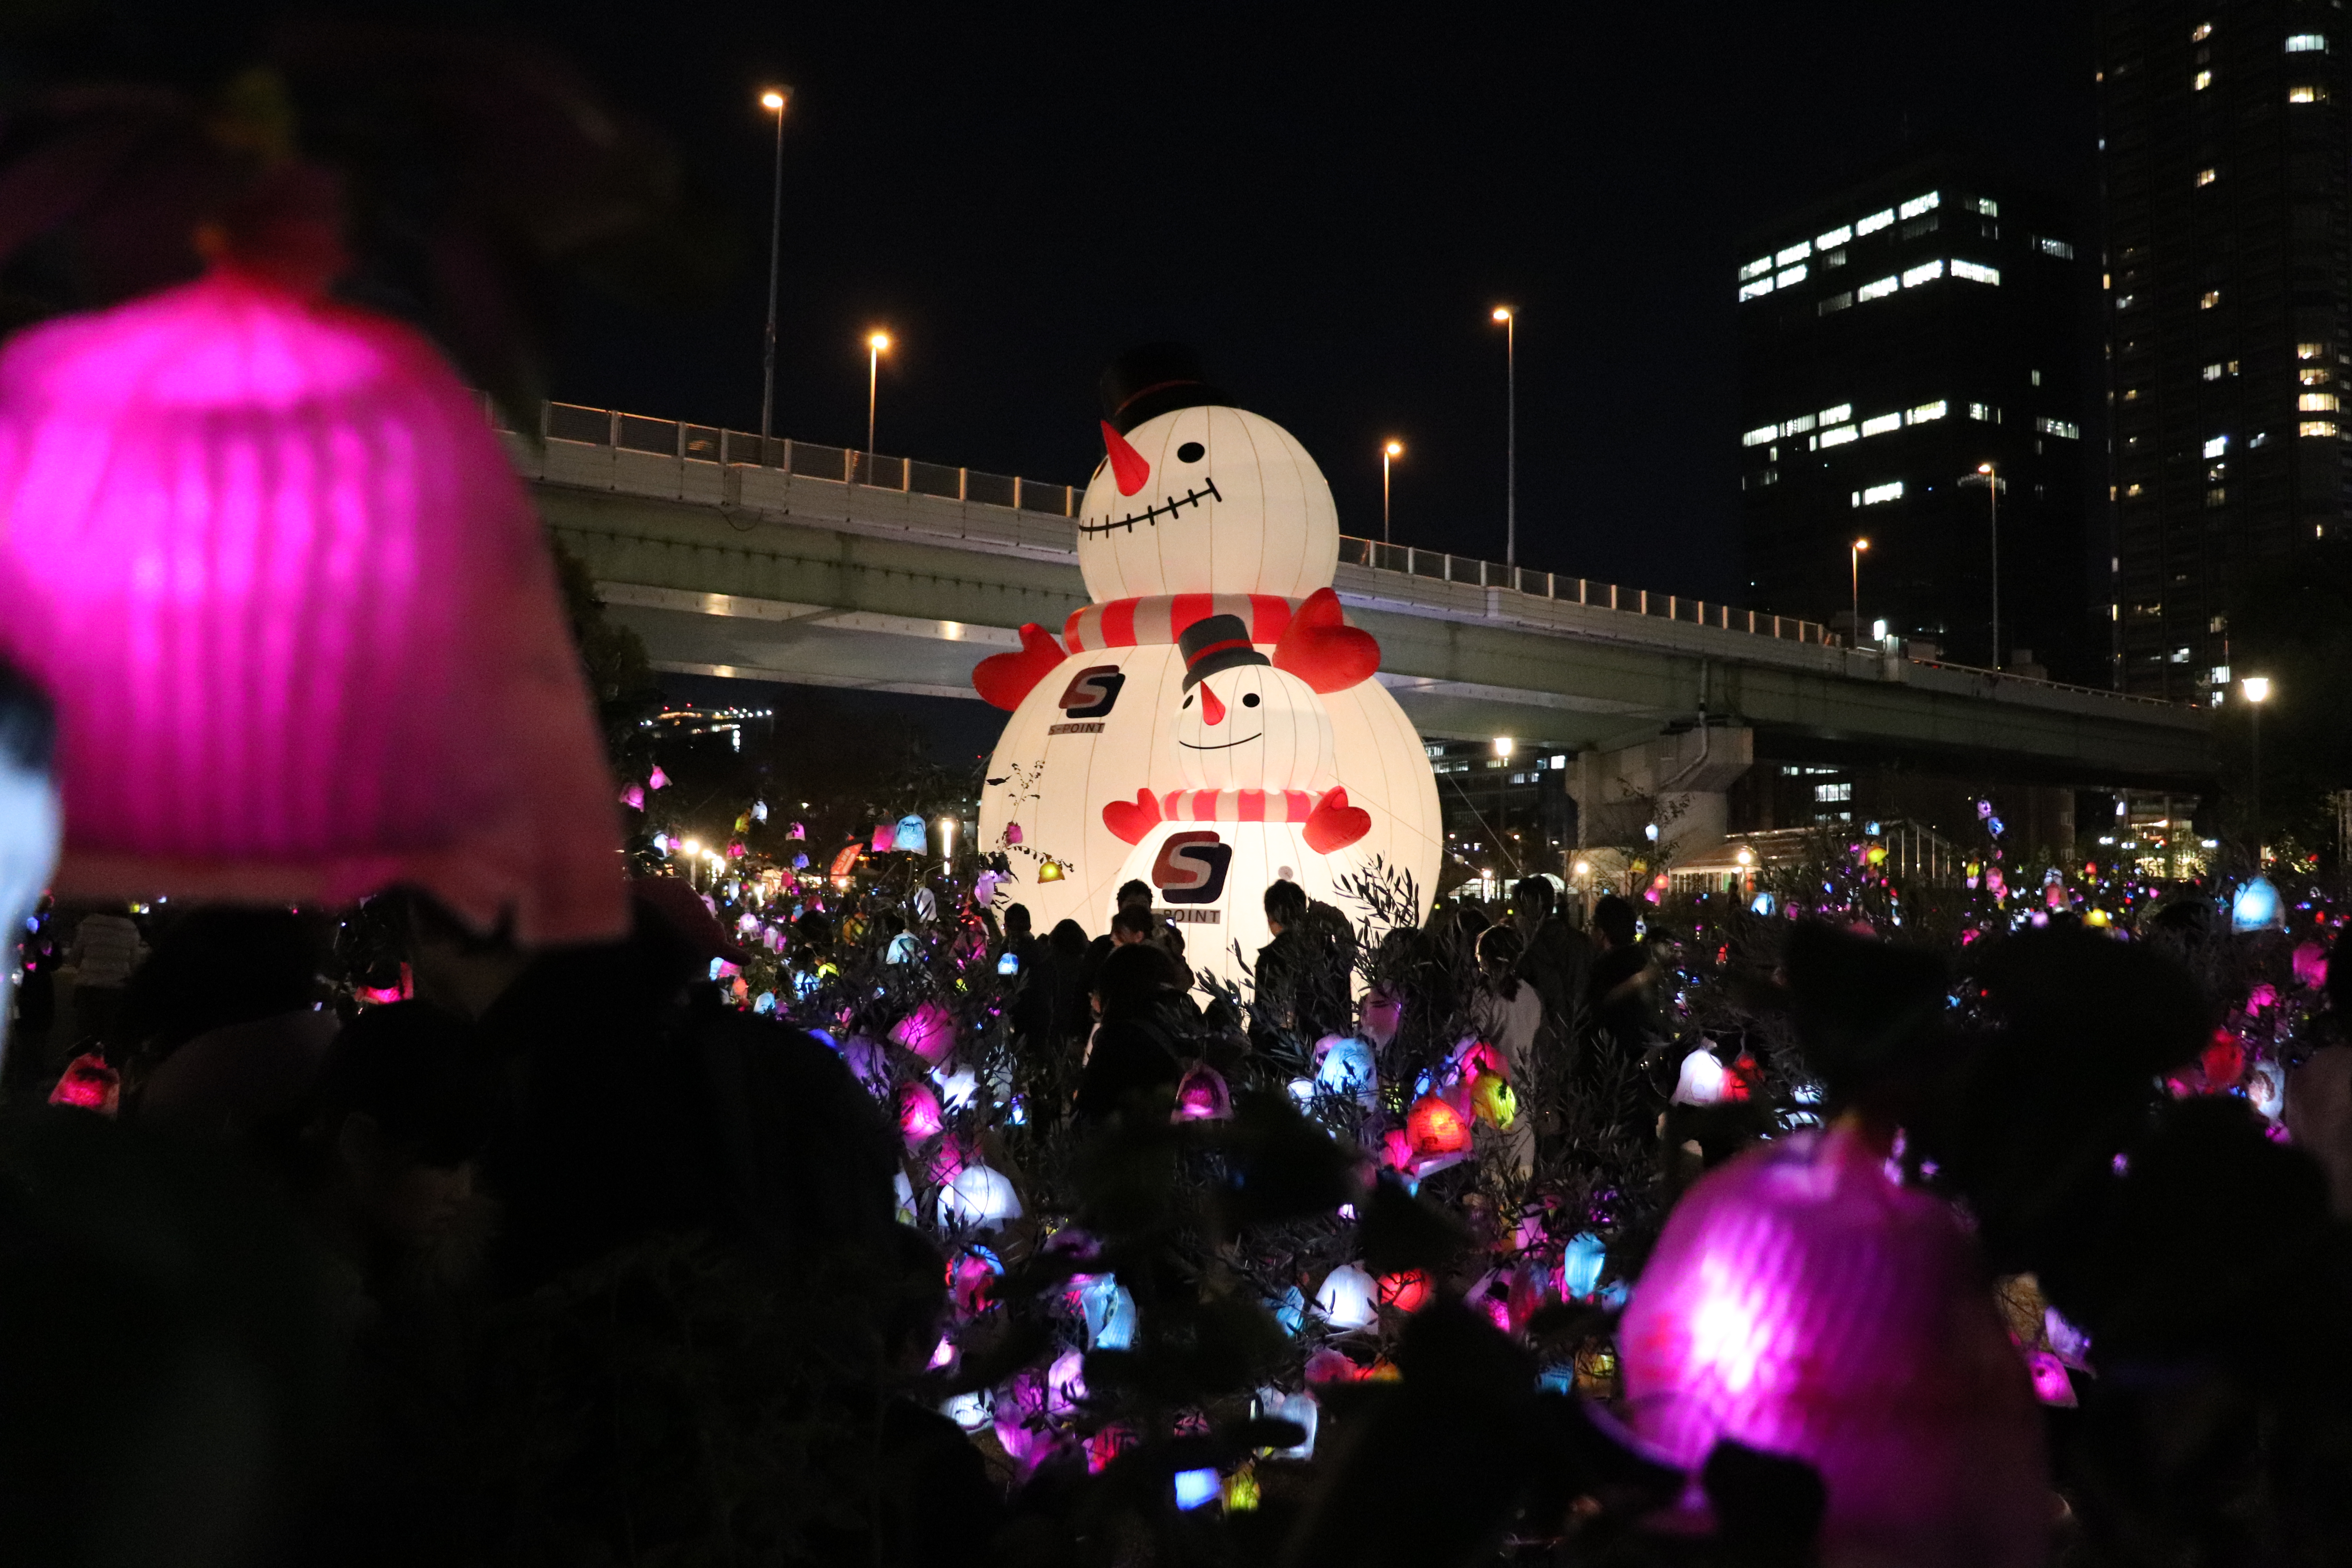 Winter illuminations at Osaka's naknoshima during Christmas in Japan